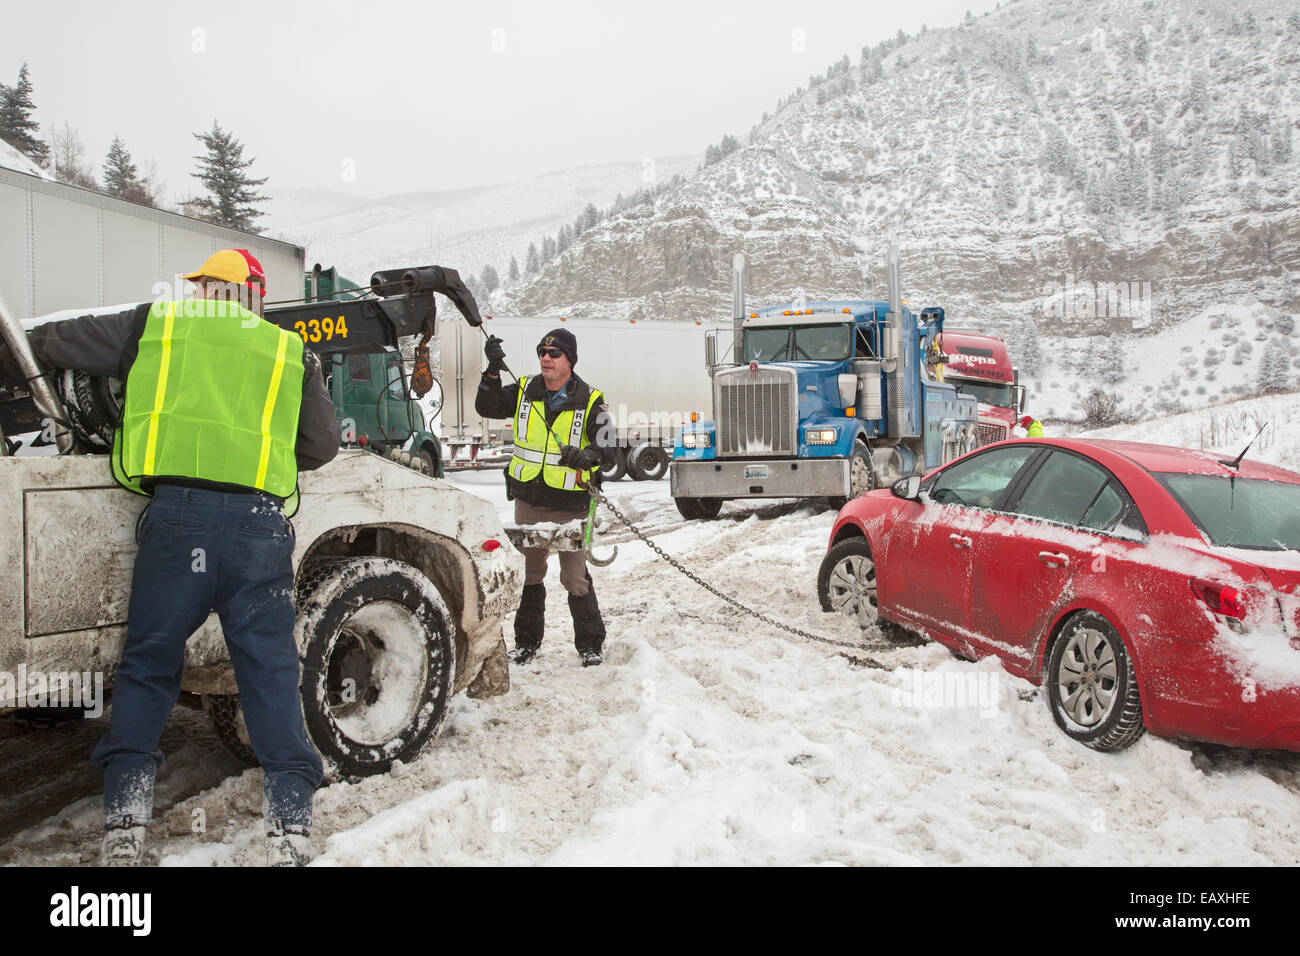 Vail Colorado - un carroattrezzi operatore e a Colorado membro ufficiale di pattuglia preparare per tirare una macchina fuori della fossa. Foto Stock